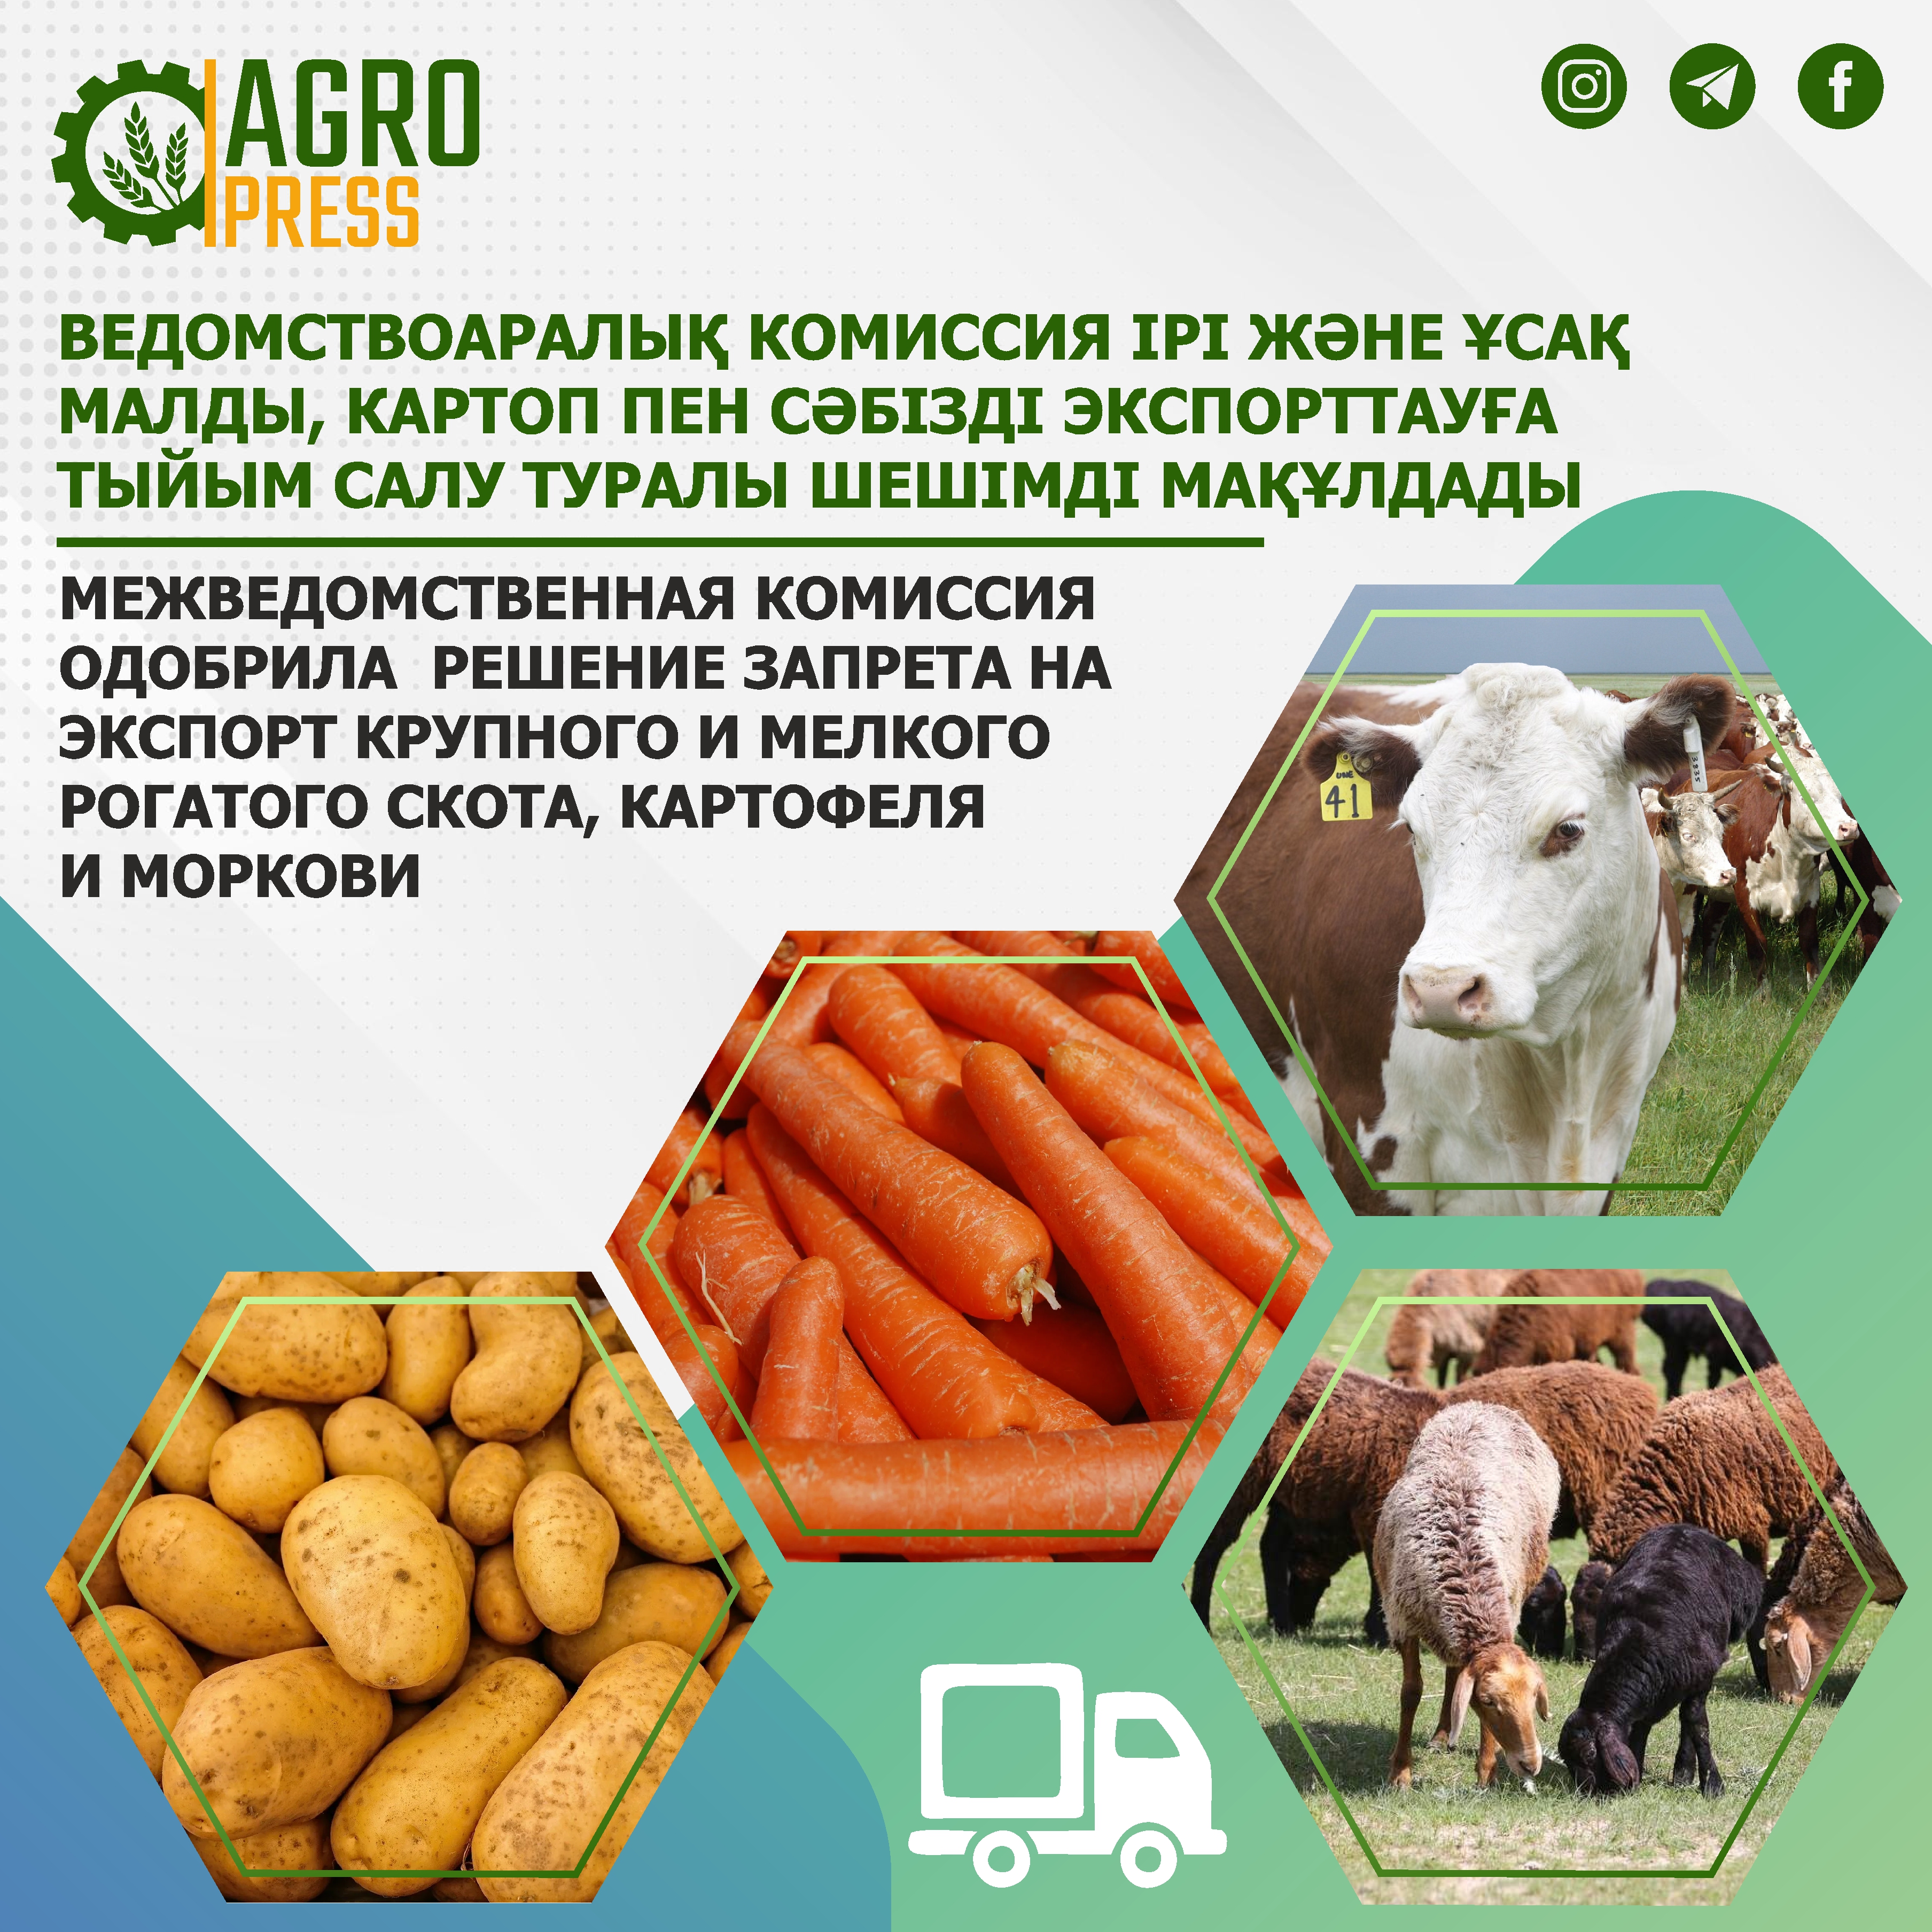 Межведомственная комиссия одобрила решение запрета на экспорт крупного и мелкого рогатого скота, картофеля и моркови